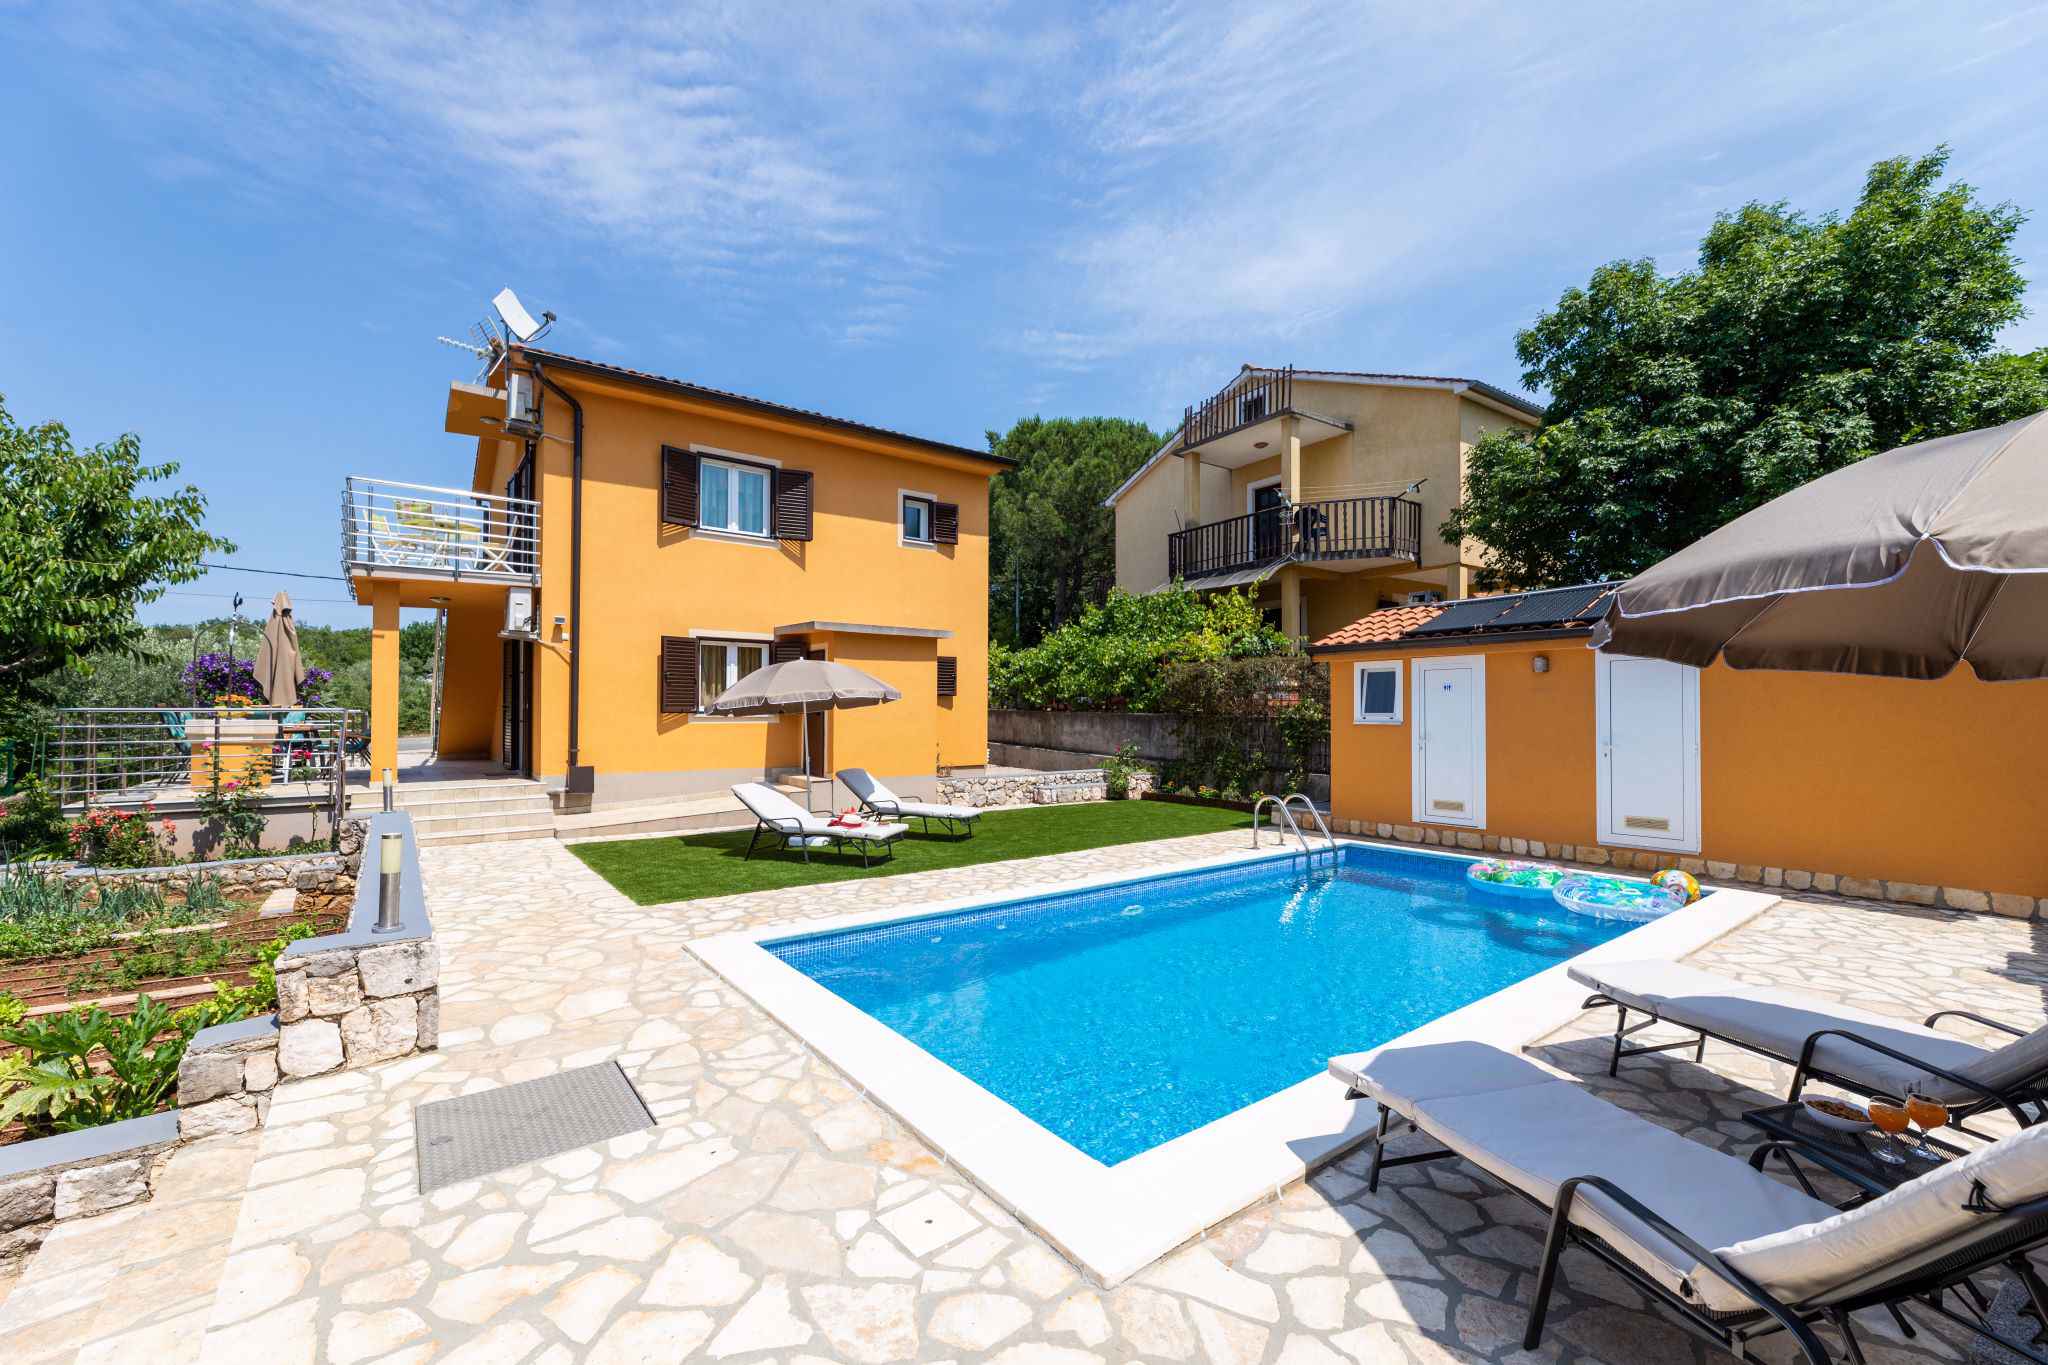 Ferienwohnung mit Pool  in Kroatien